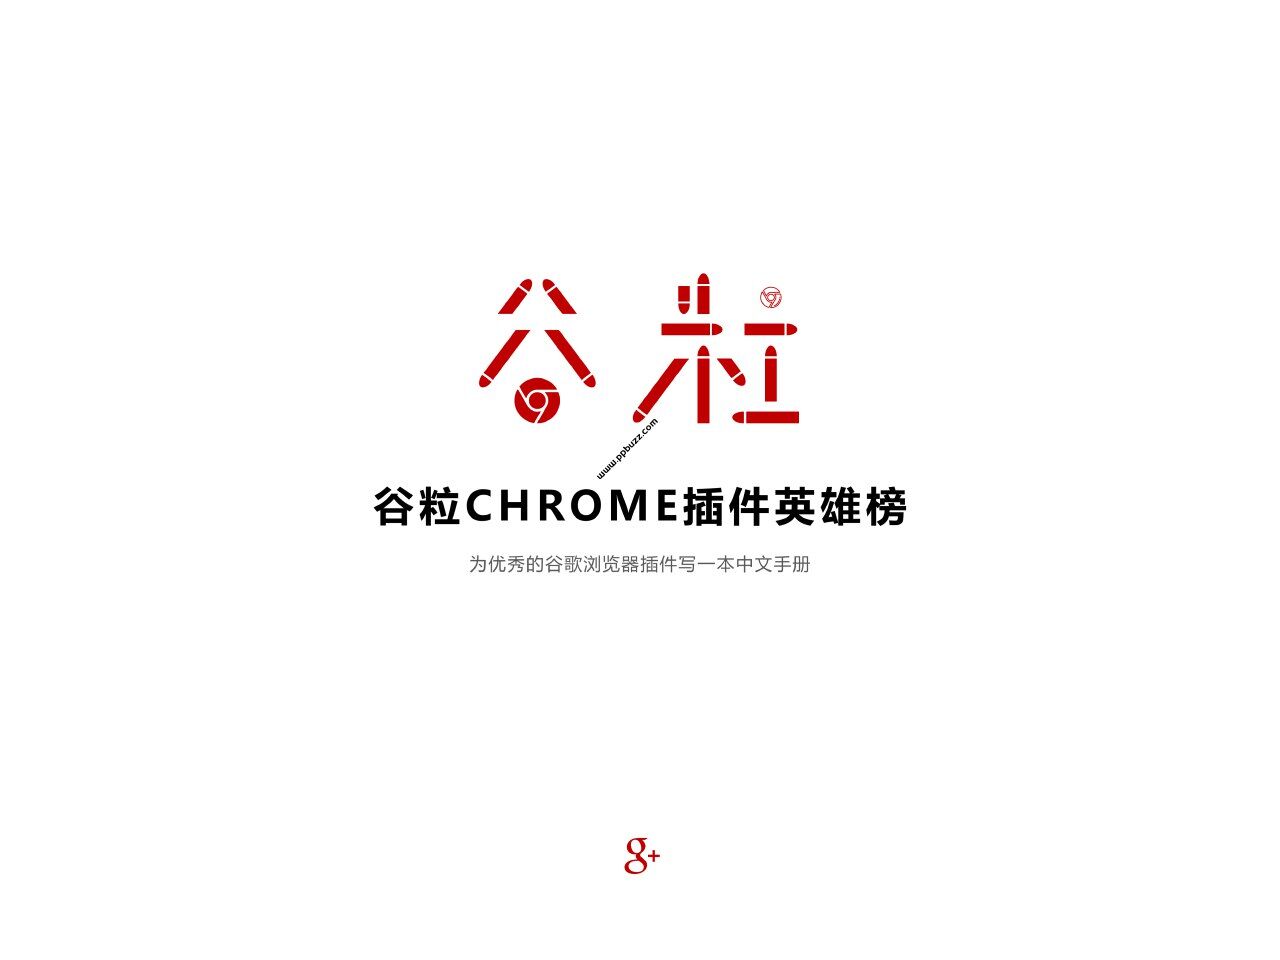 Chrome插件英雄榜, 为优秀的Chrome插件写一本中文说明书